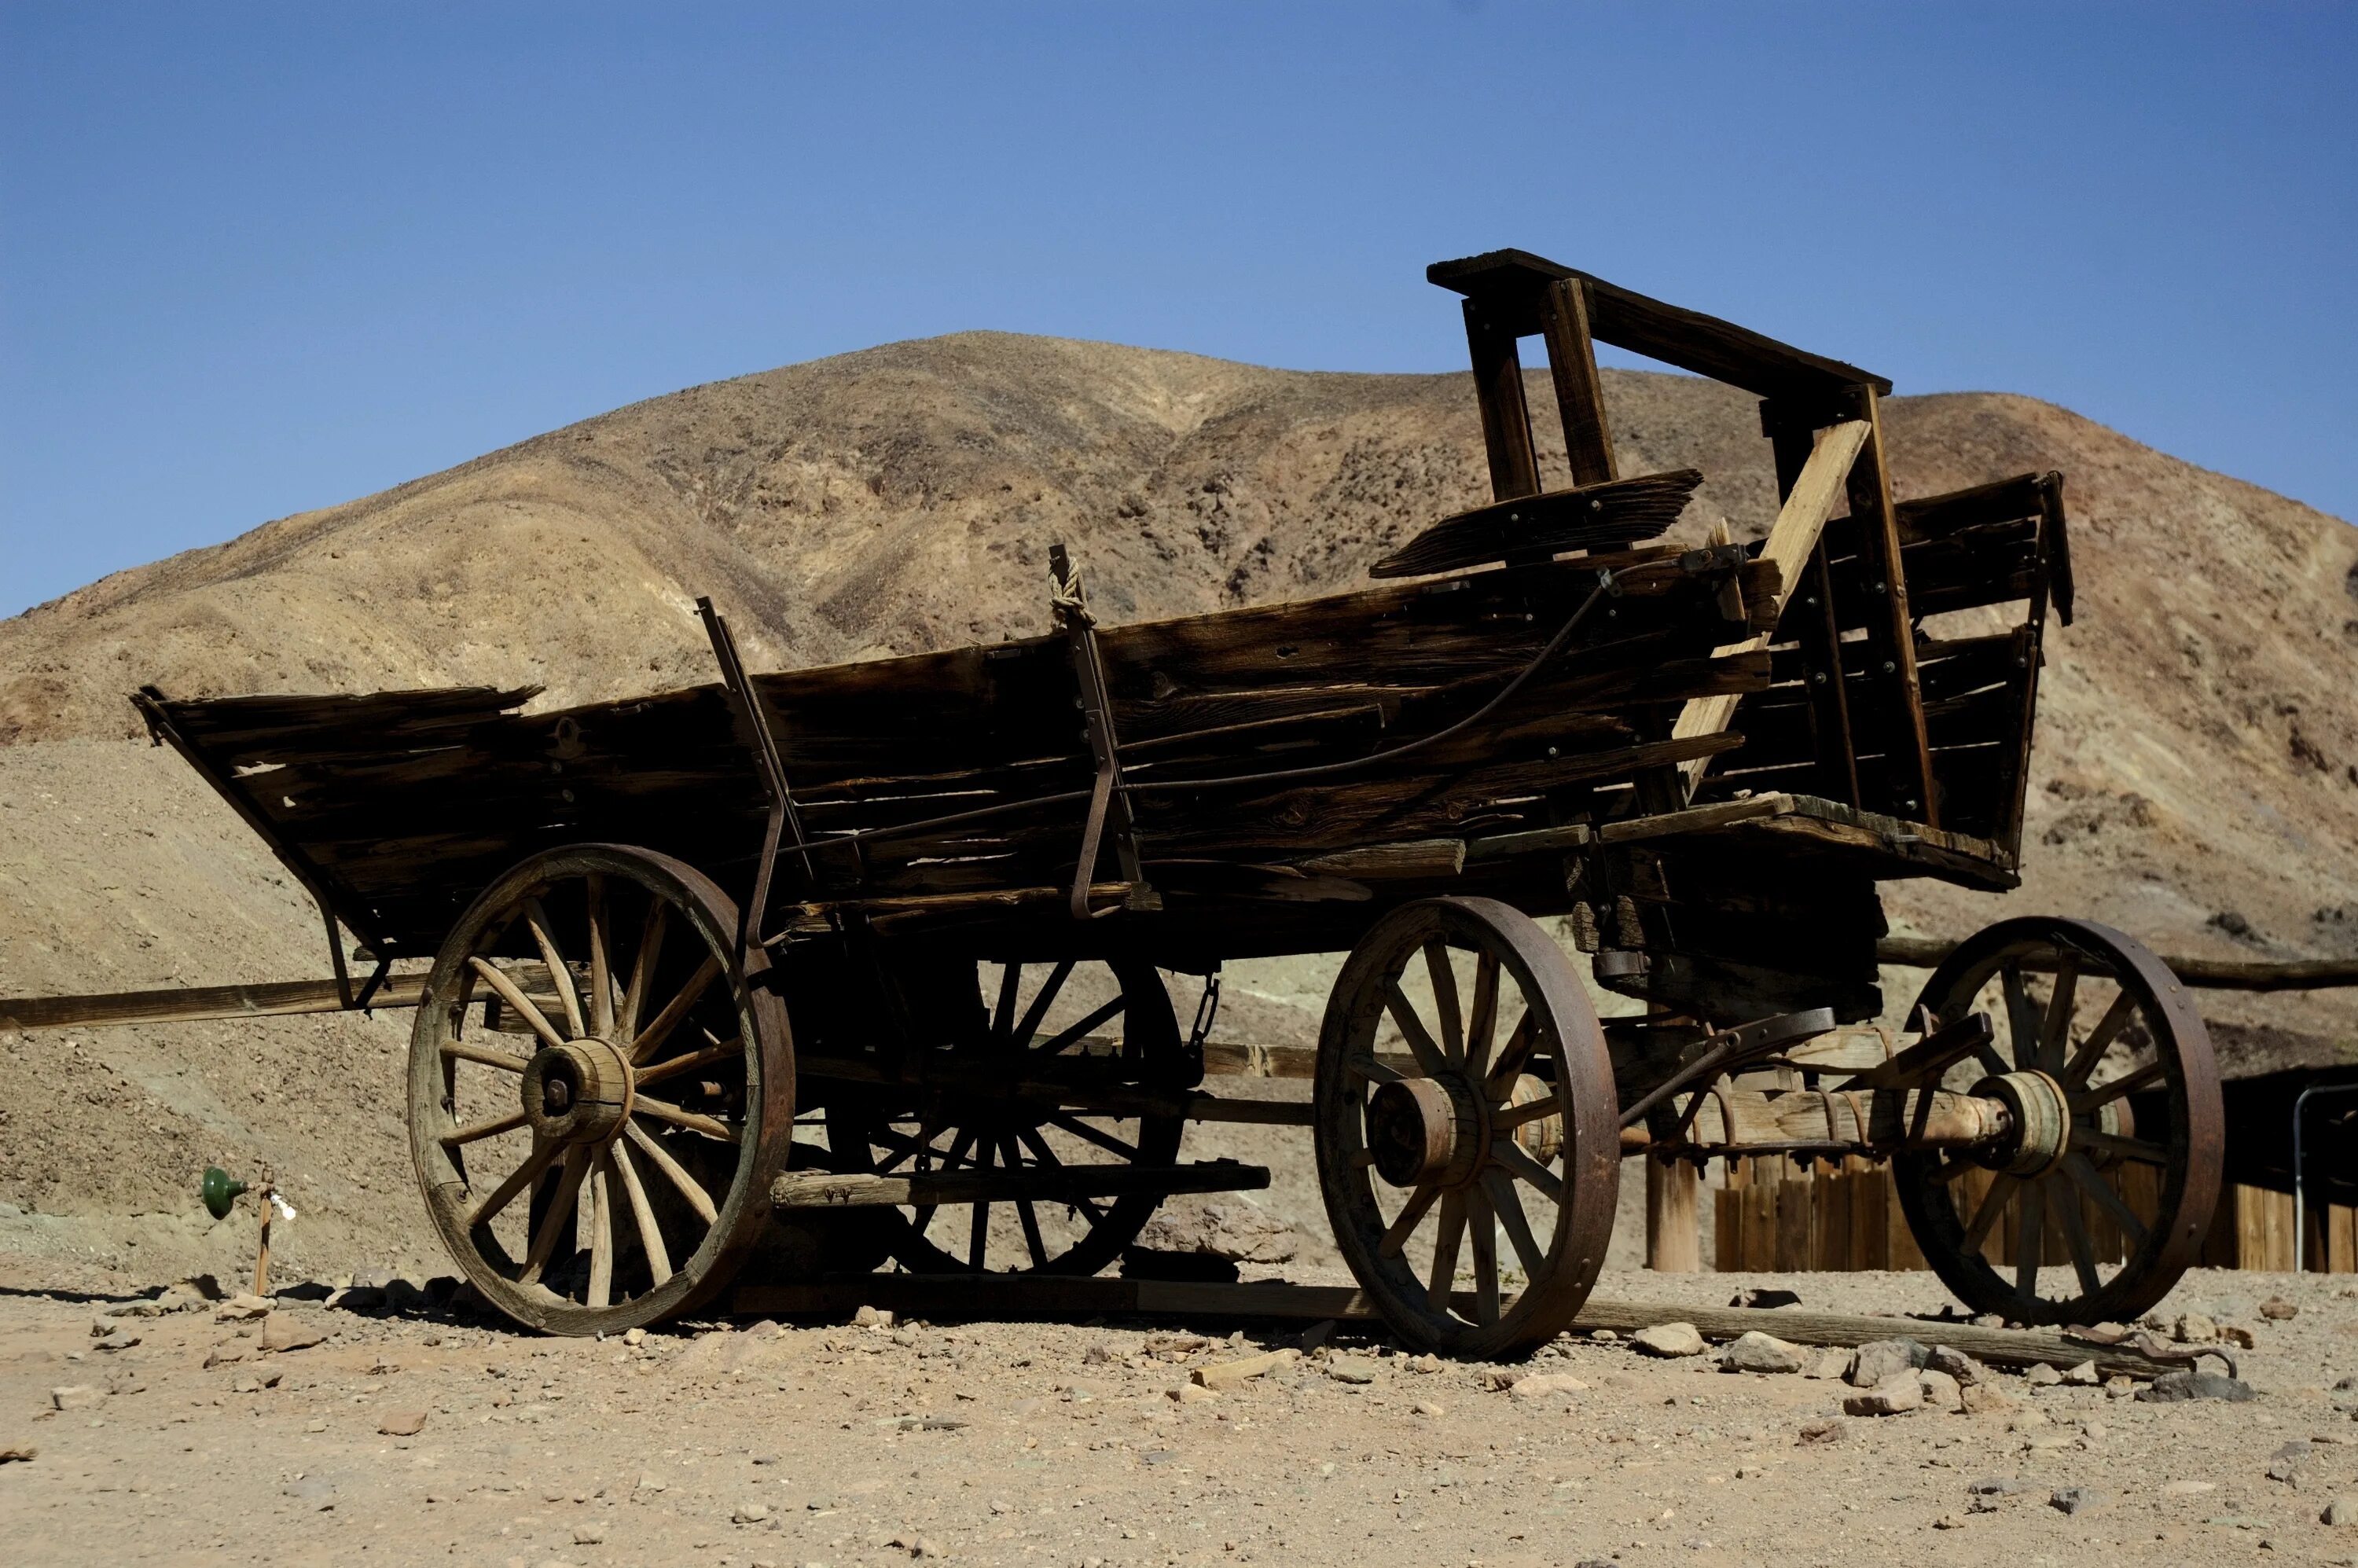 Wagon – тележка, повозка. Телега старинная. Телега в пустыне. Повозка в пустыне.